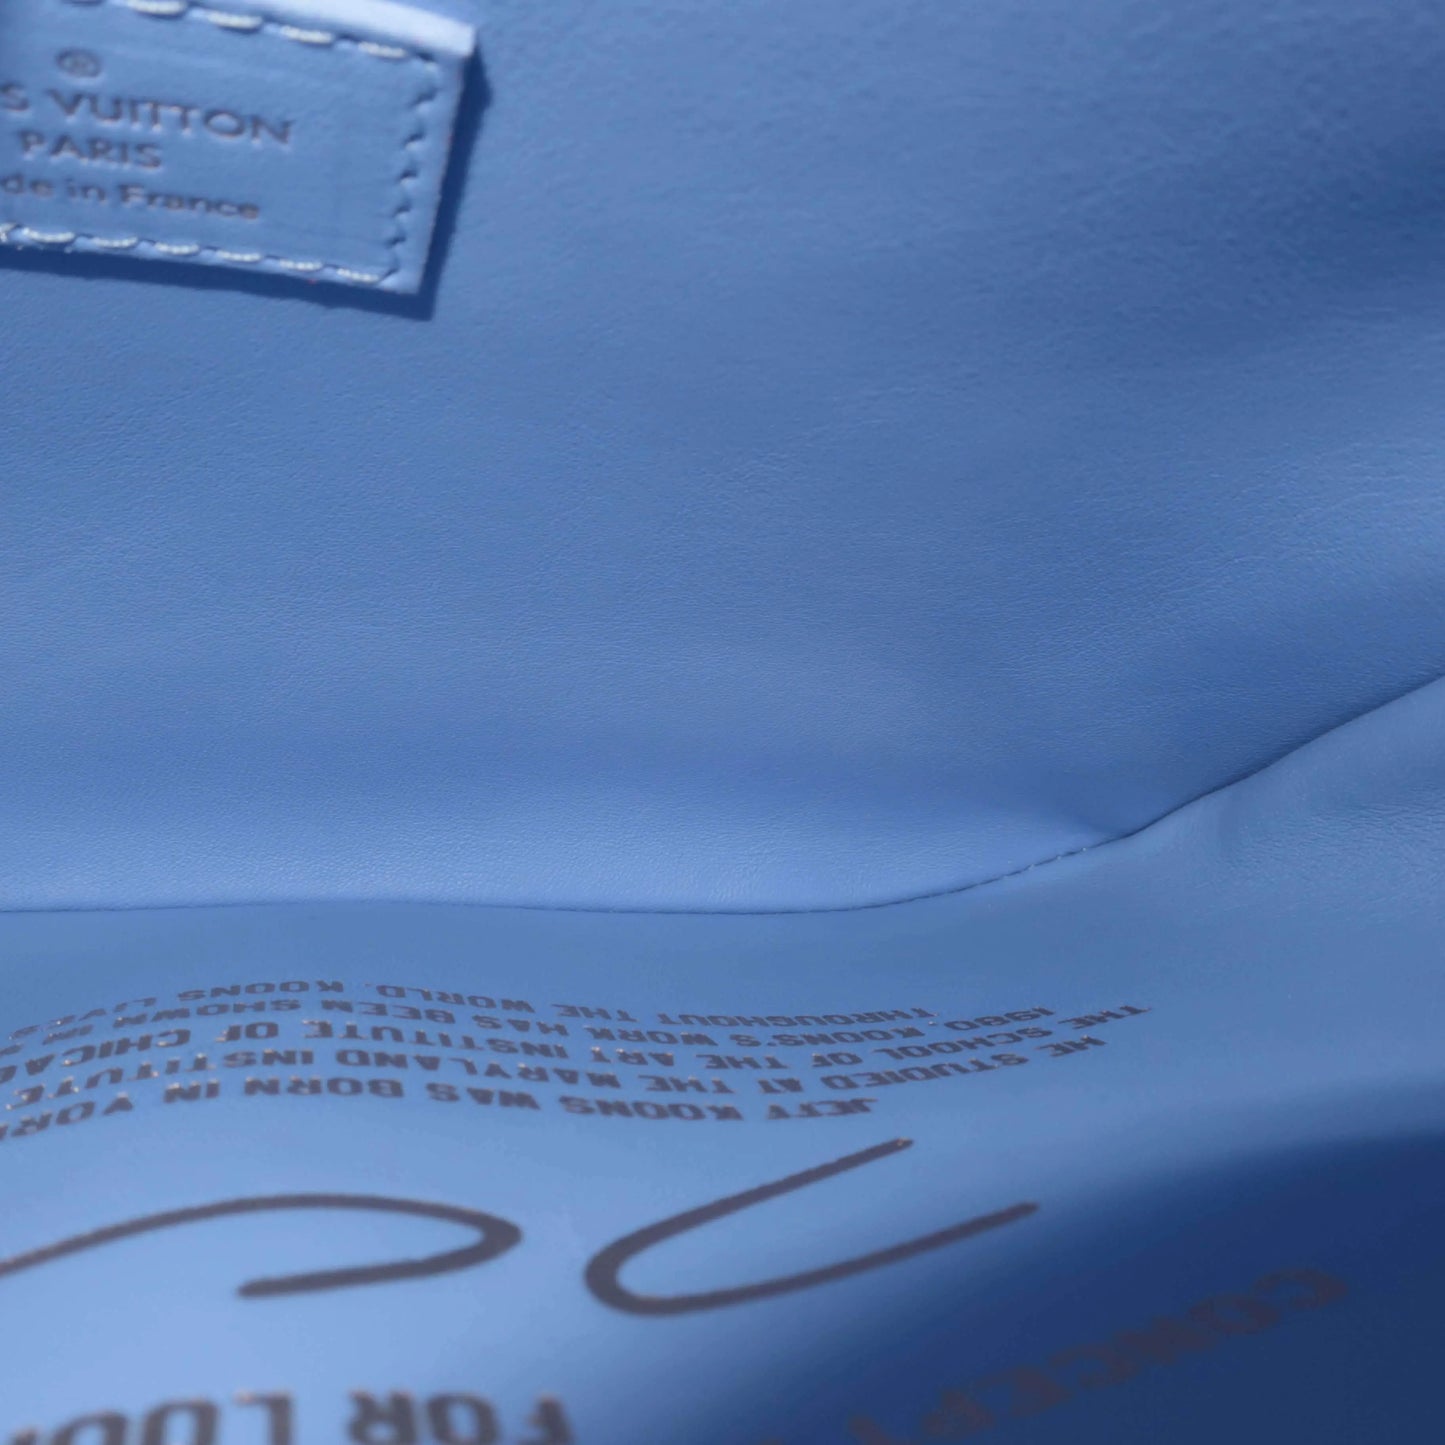 Louis Vuitton x Jeff Koons Monet Pochette Métis Bag - The Cool Dealer